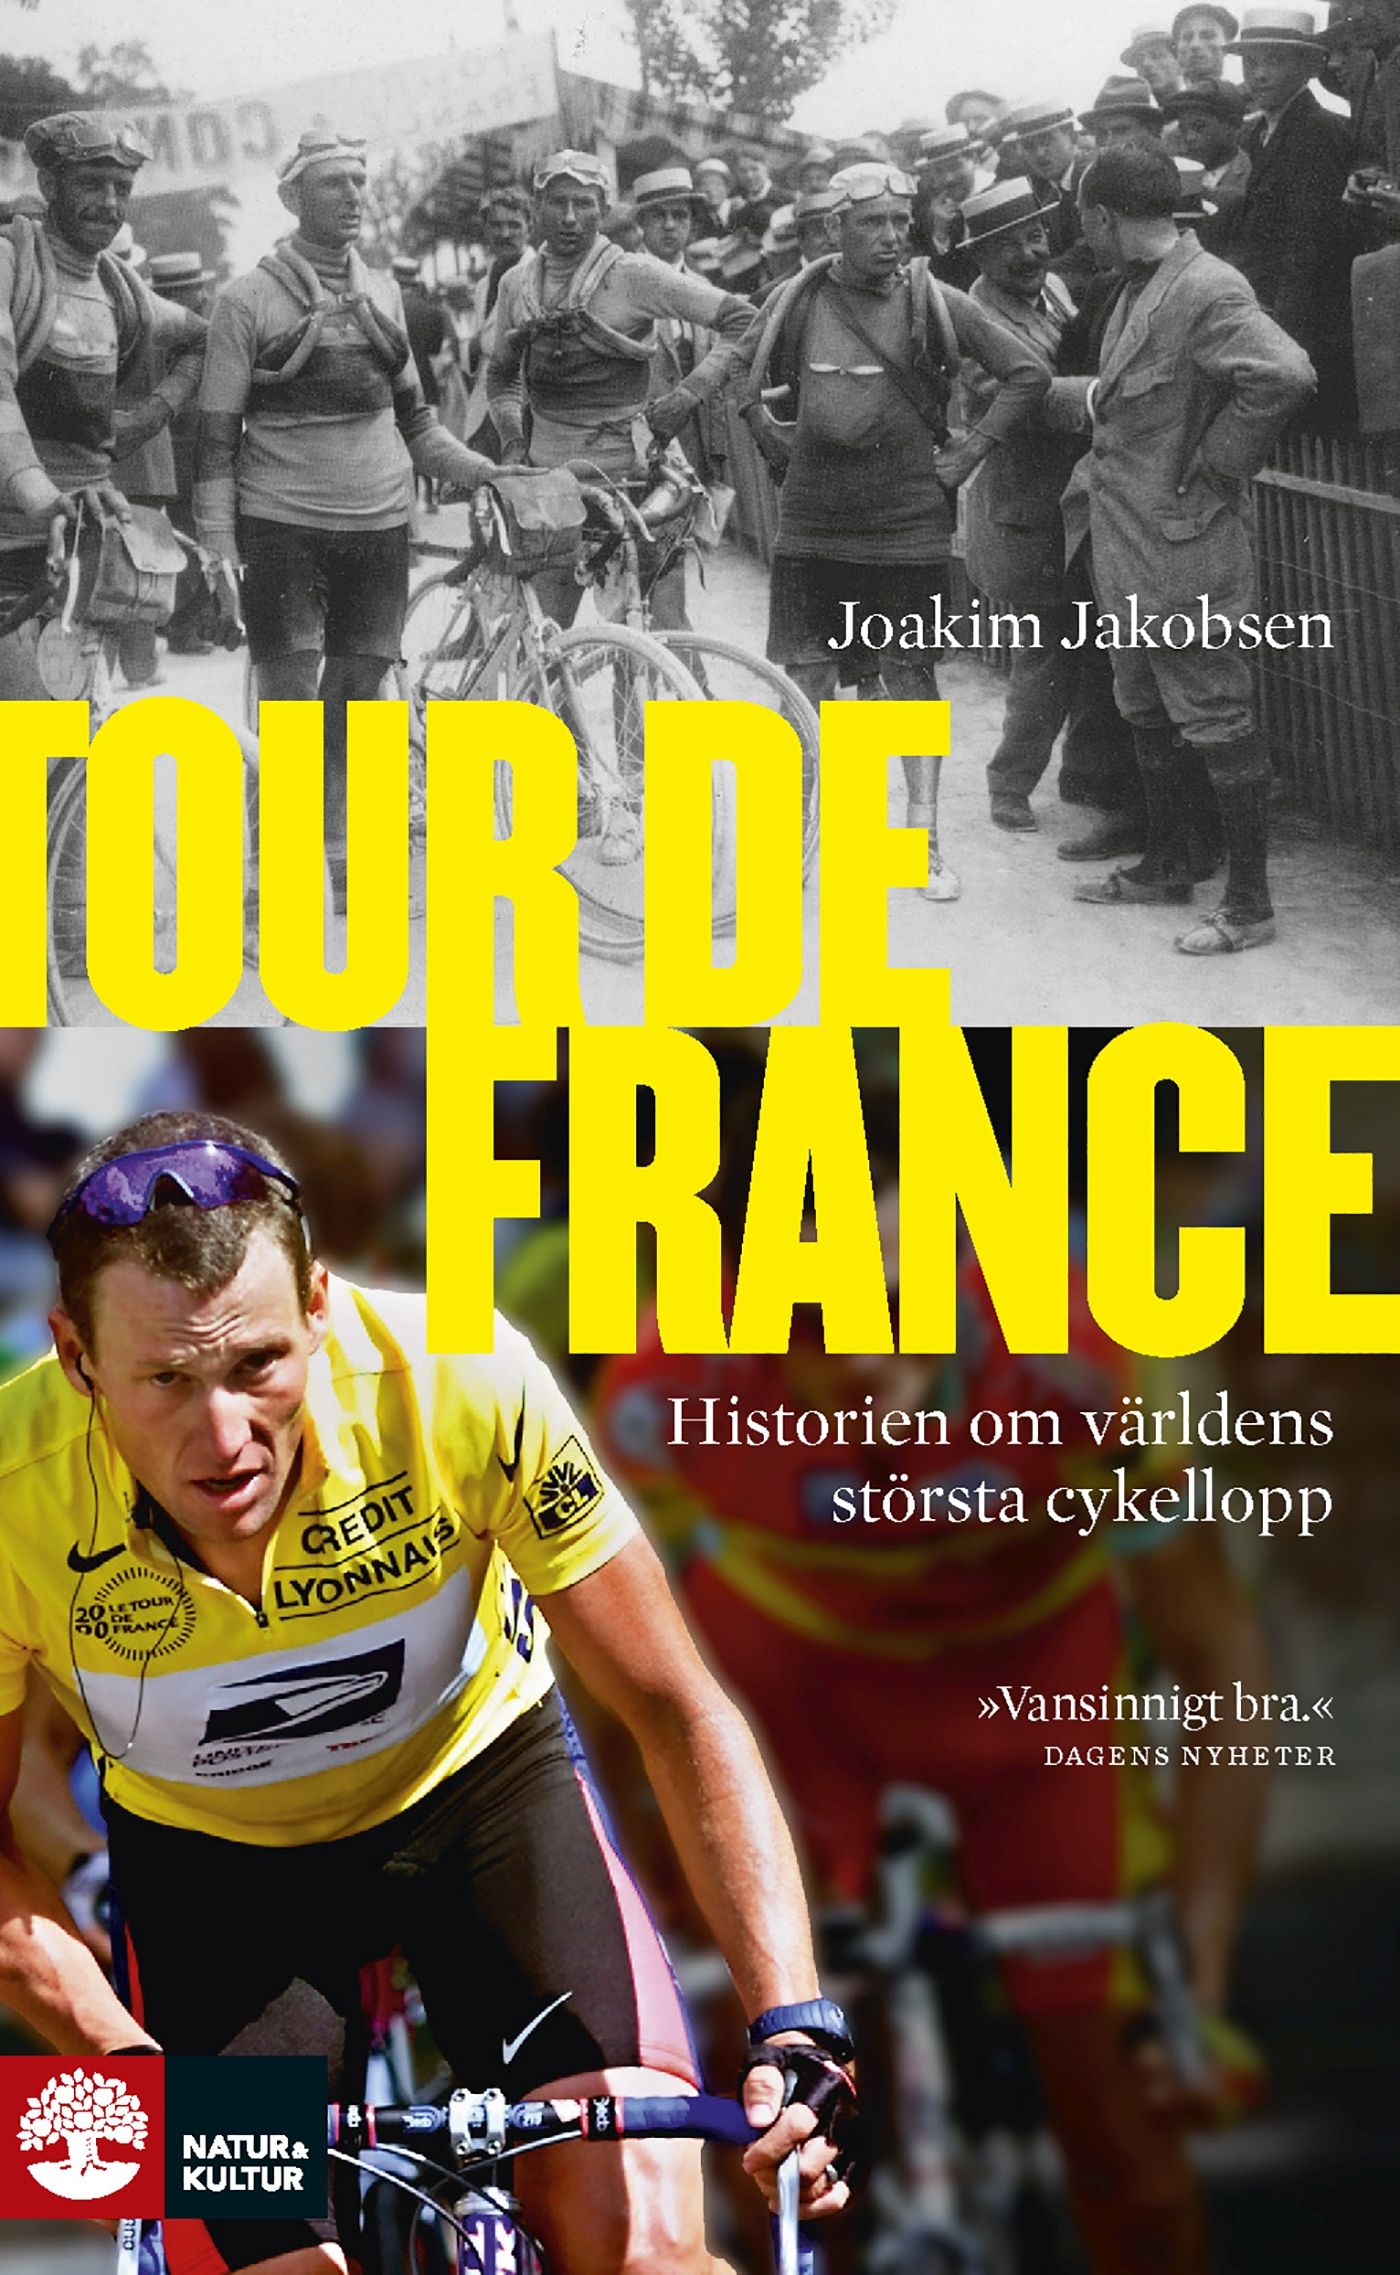 Tour de France, e-bok av Joakim Jakobsen